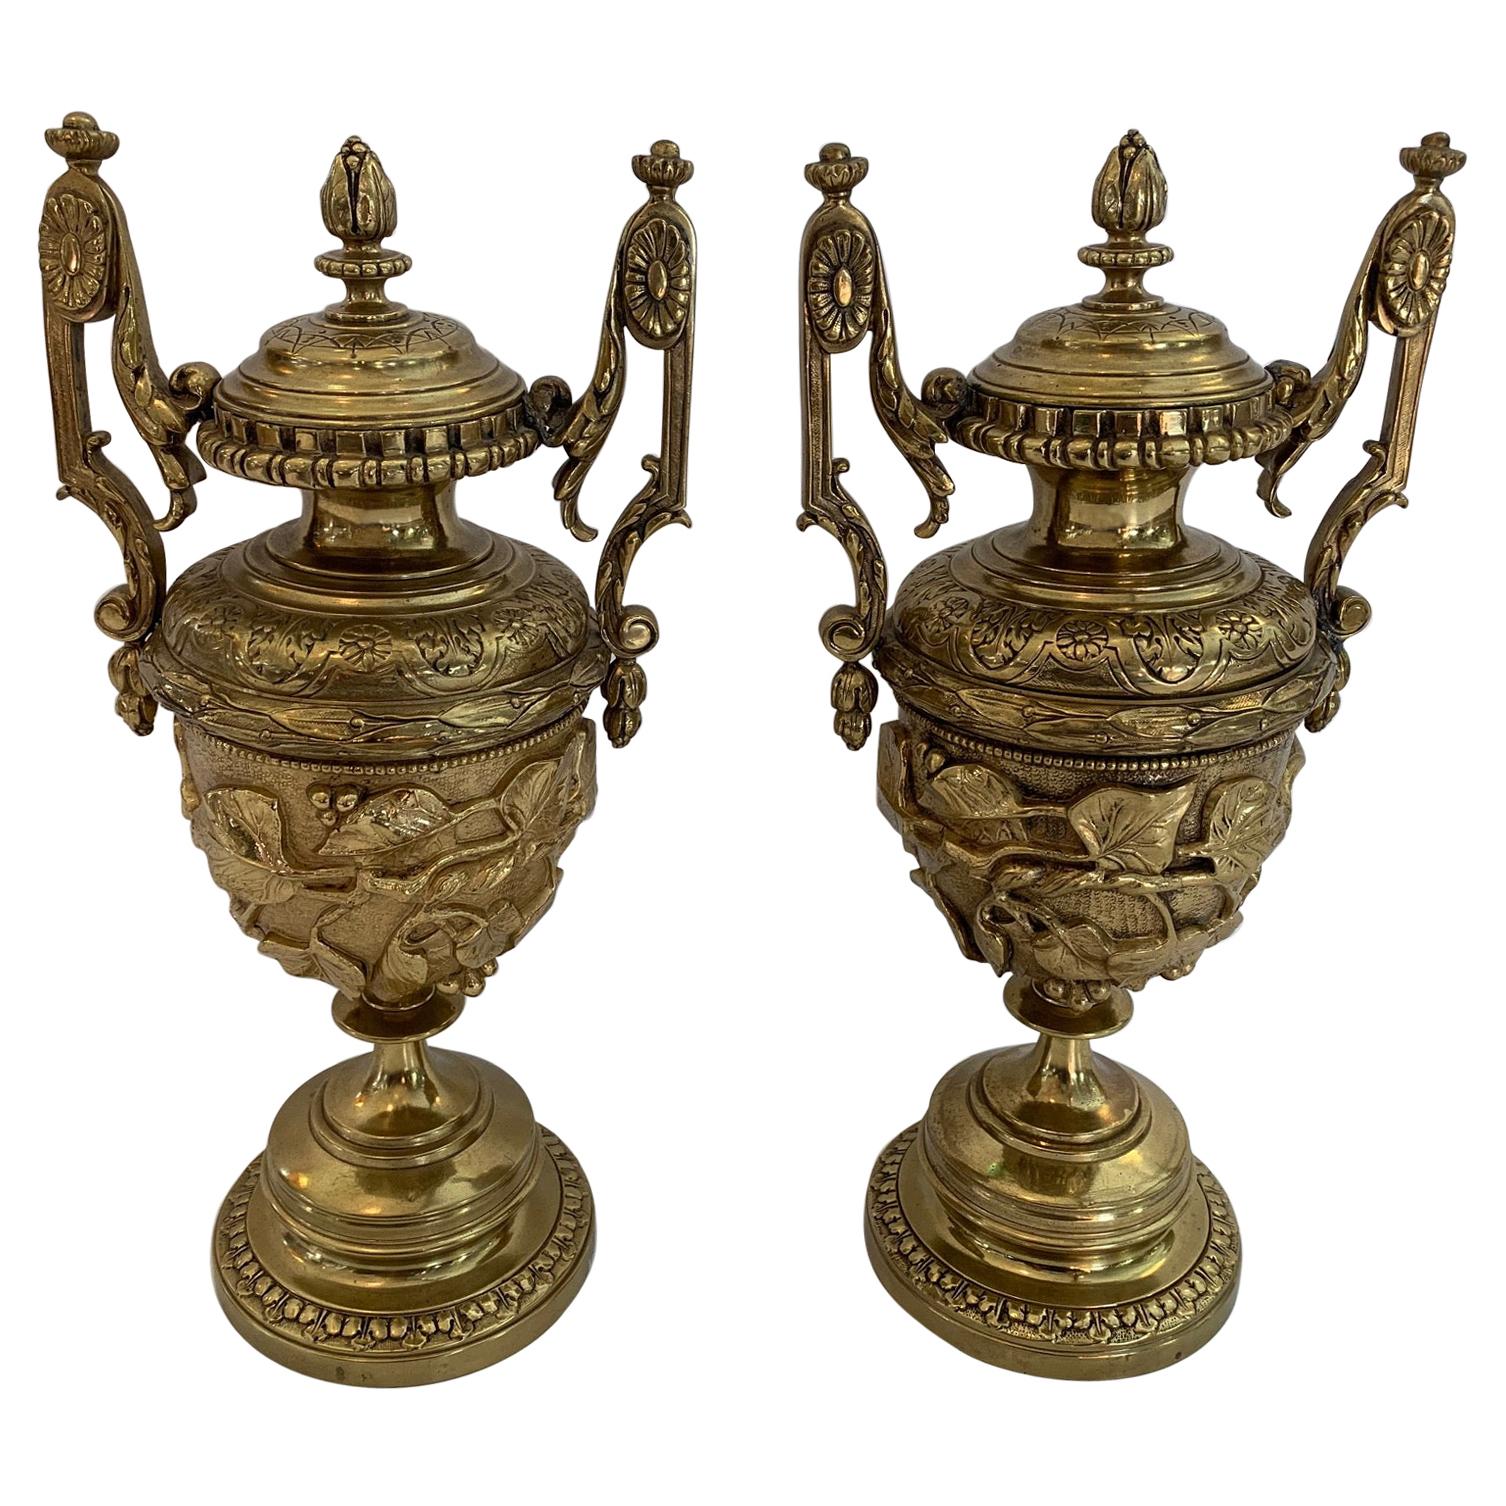 Paar wunderschöne, verschnörkelte Urnen im Revival-Stil aus gegossenem Messing mit Deckeln